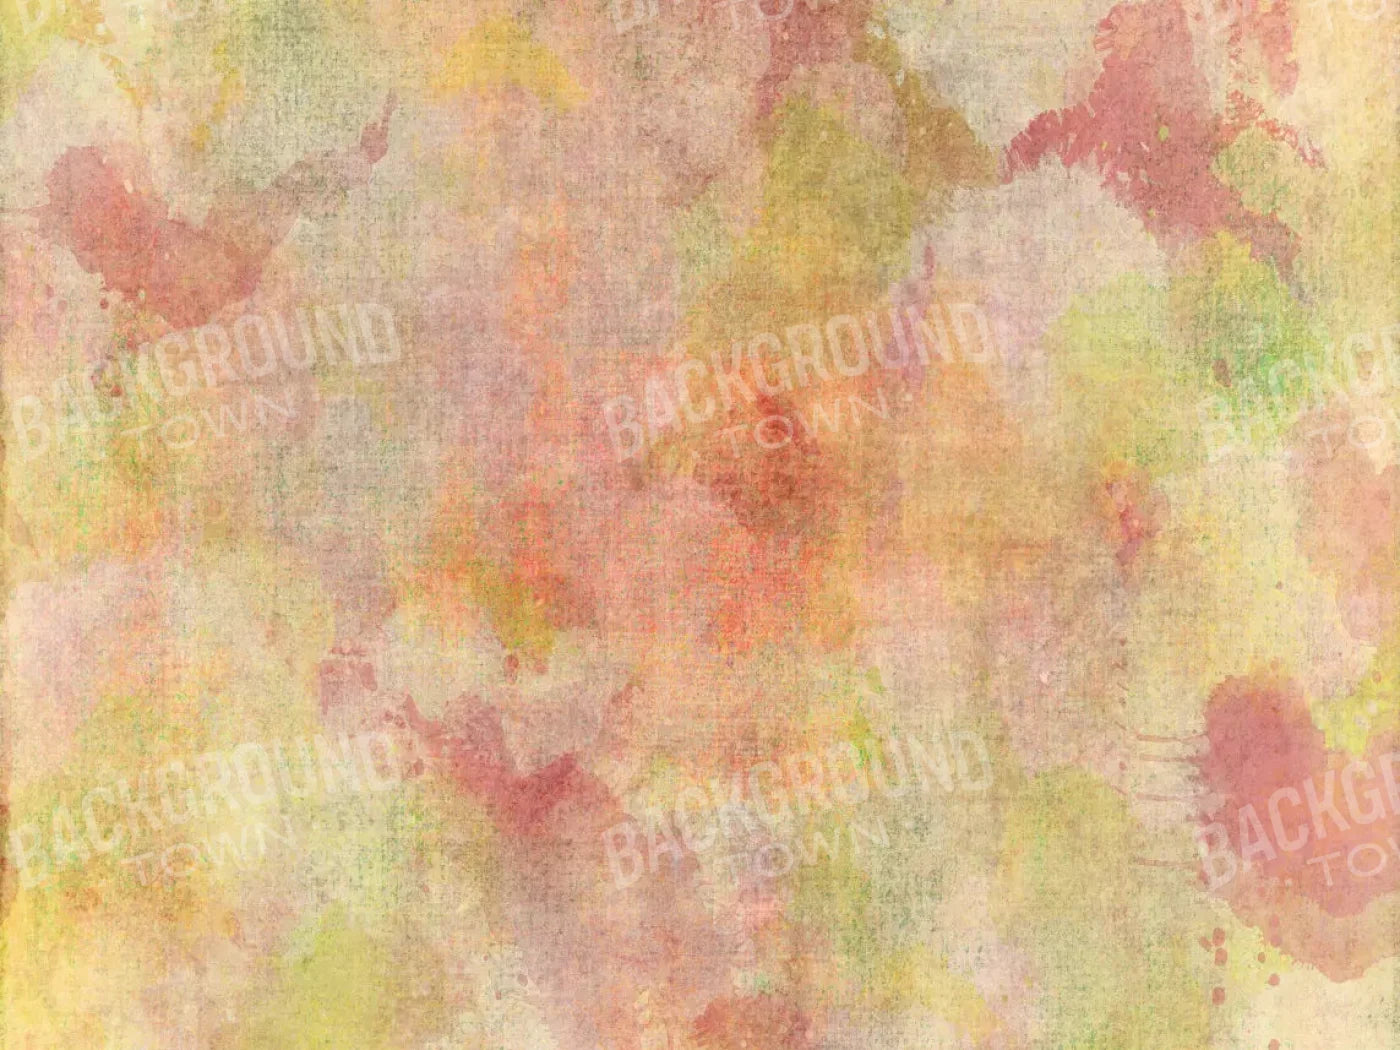 Beth Ann 7X5 Ultracloth ( 84 X 60 Inch ) Backdrop